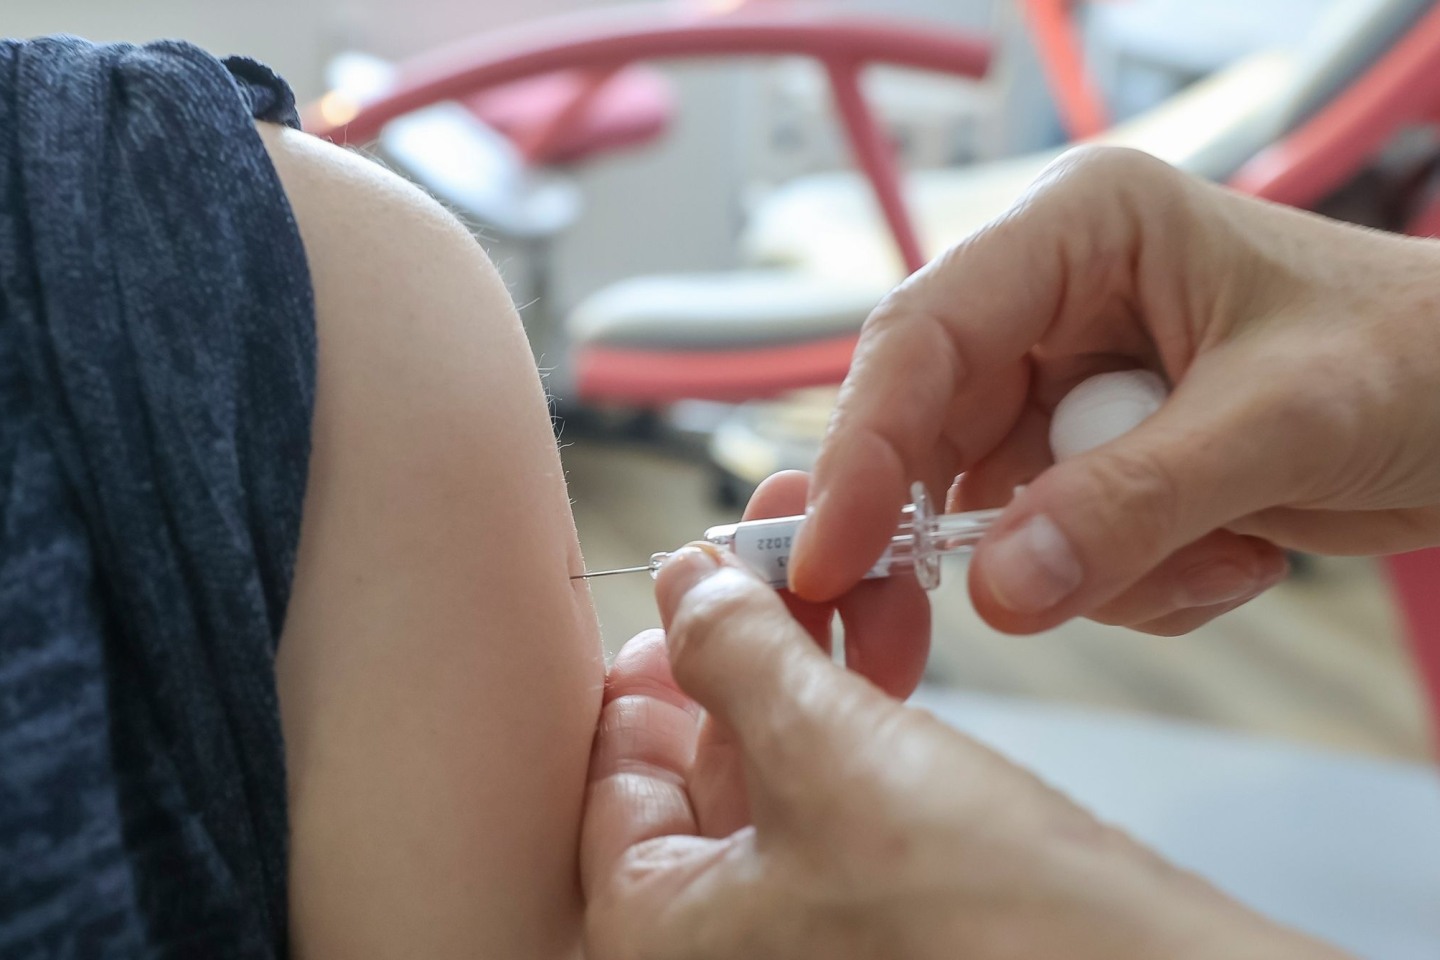 Empfohlen wird die jährliche Grippeimpfung für alle Schwangeren ab dem 2. Trimenon.